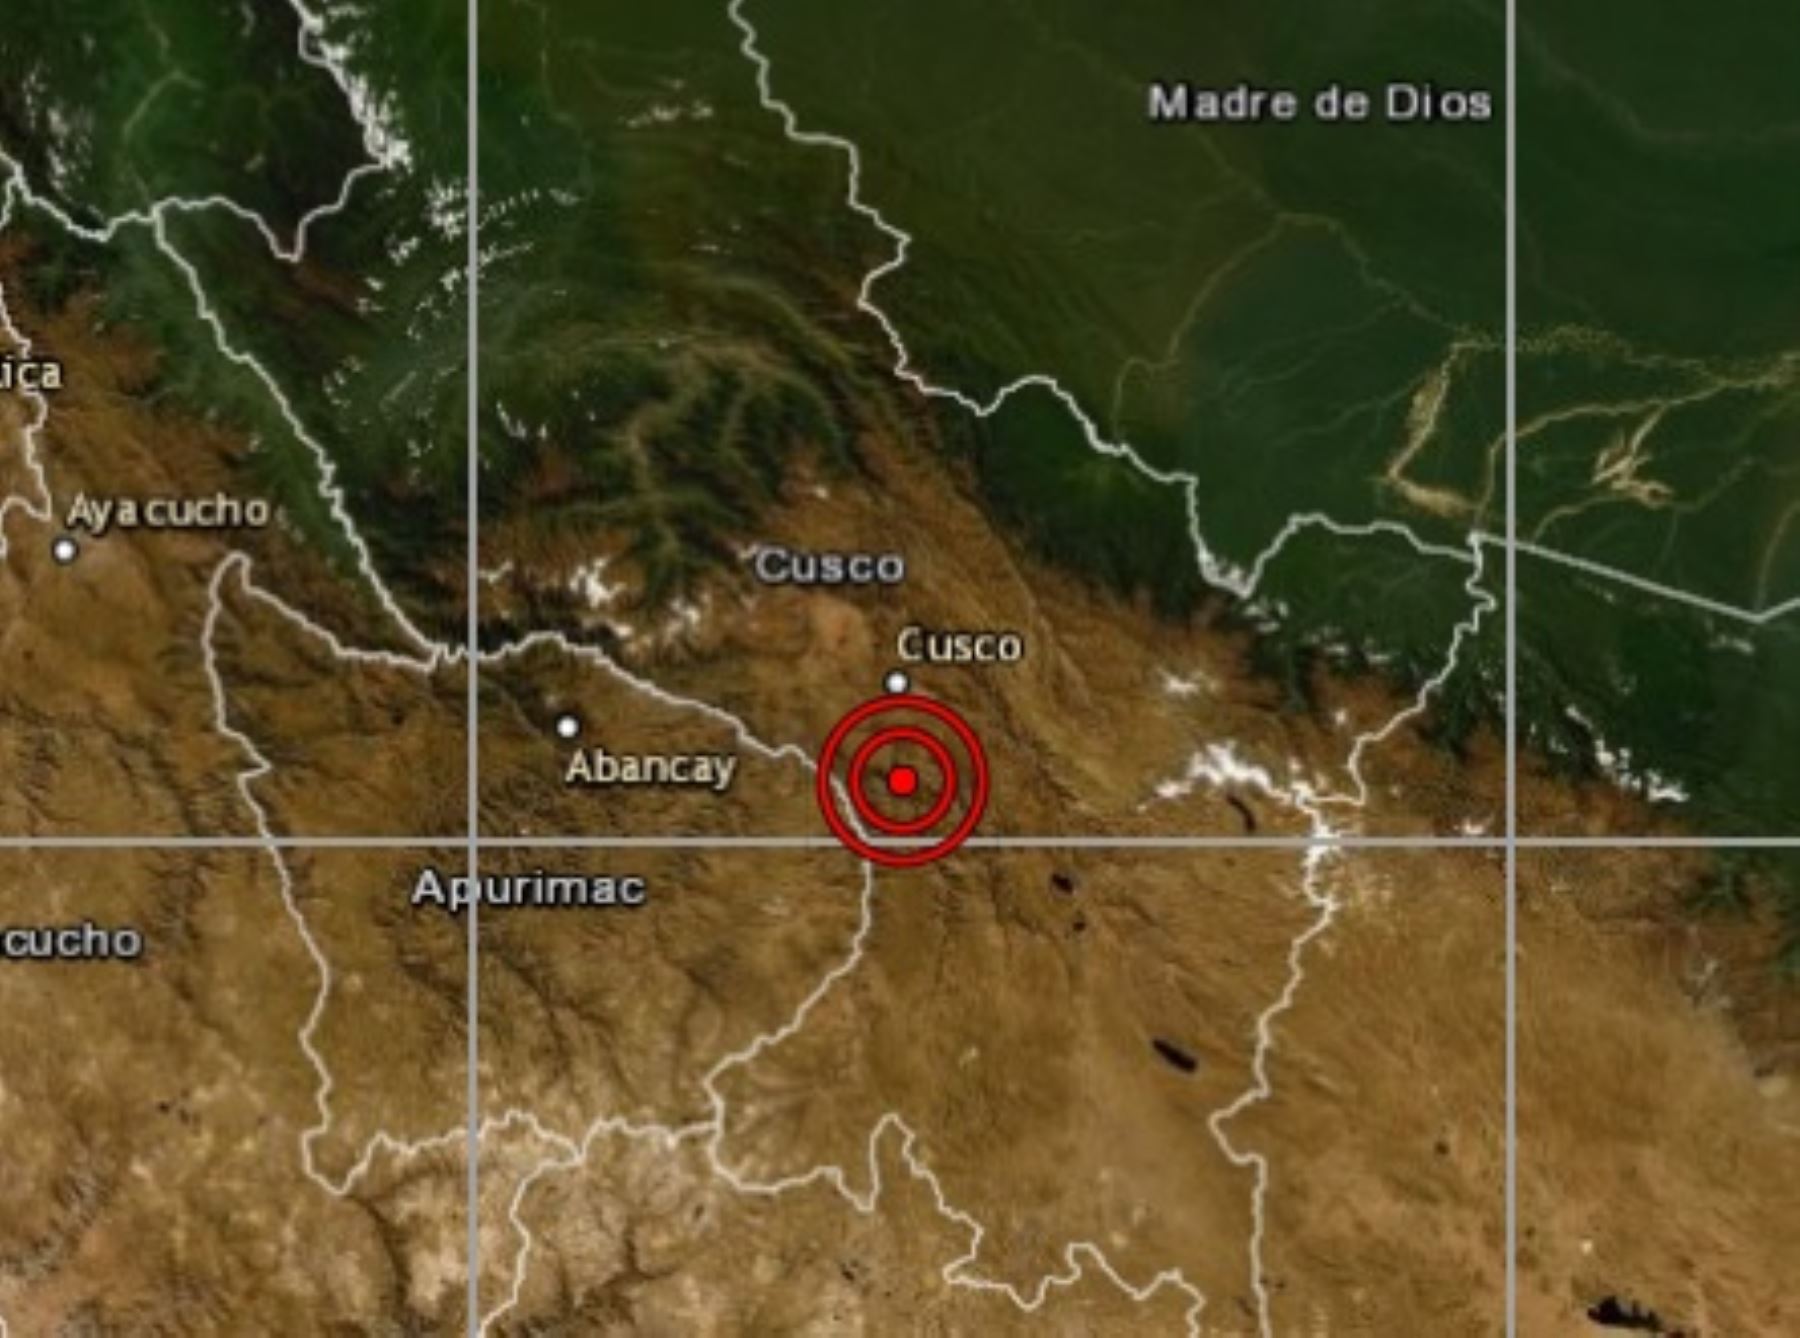 Un temblor de magnitud 4.1 remeció esta madrugada la provincia de Chumbivilcas, región Cusco, reportó el Centro Sismológico Nacional del Instituto Geofísico del Perú. Foto: ANDINA/archivo.